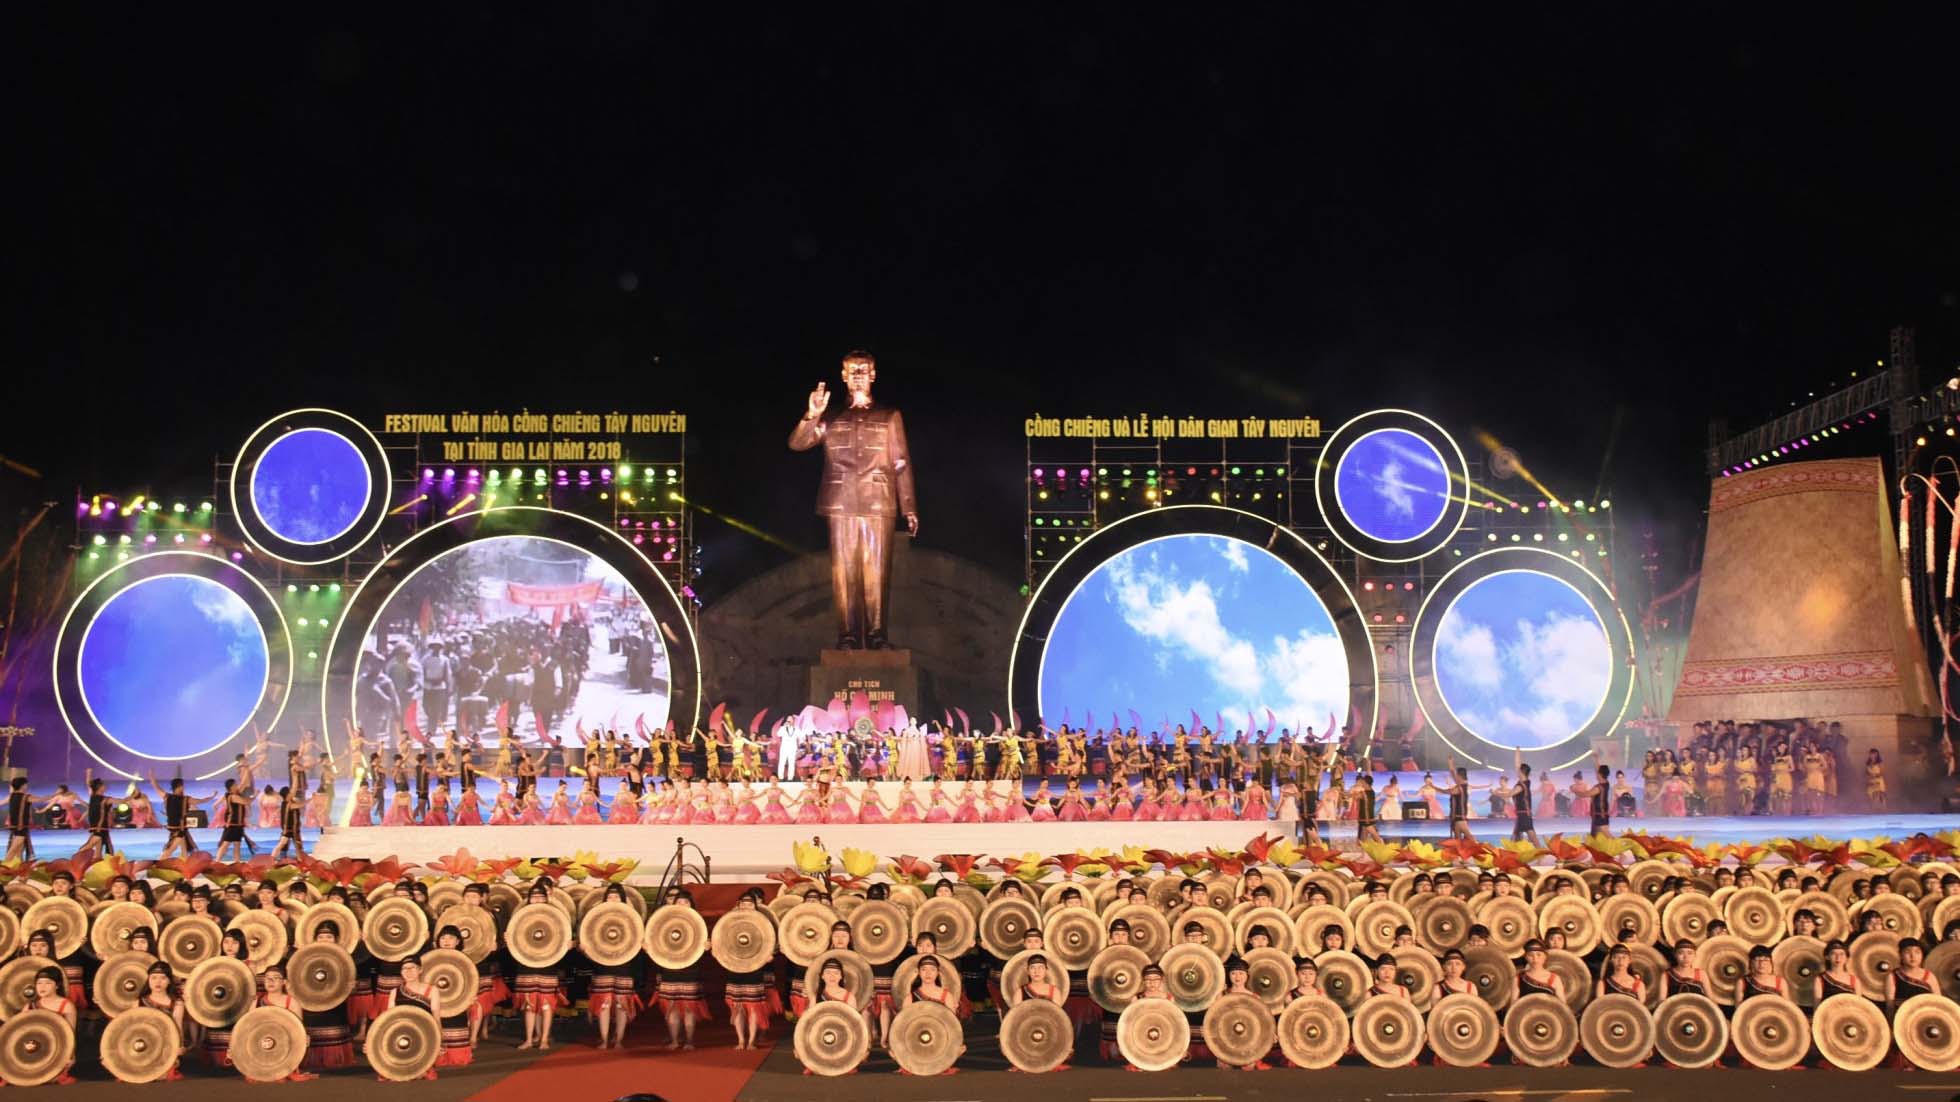 Festival Văn hóa Cồng chiêng Tây Nguyên tỉnh Gia Lai lần thứ 2 dự kiến tổ chức vào tháng 11-2022